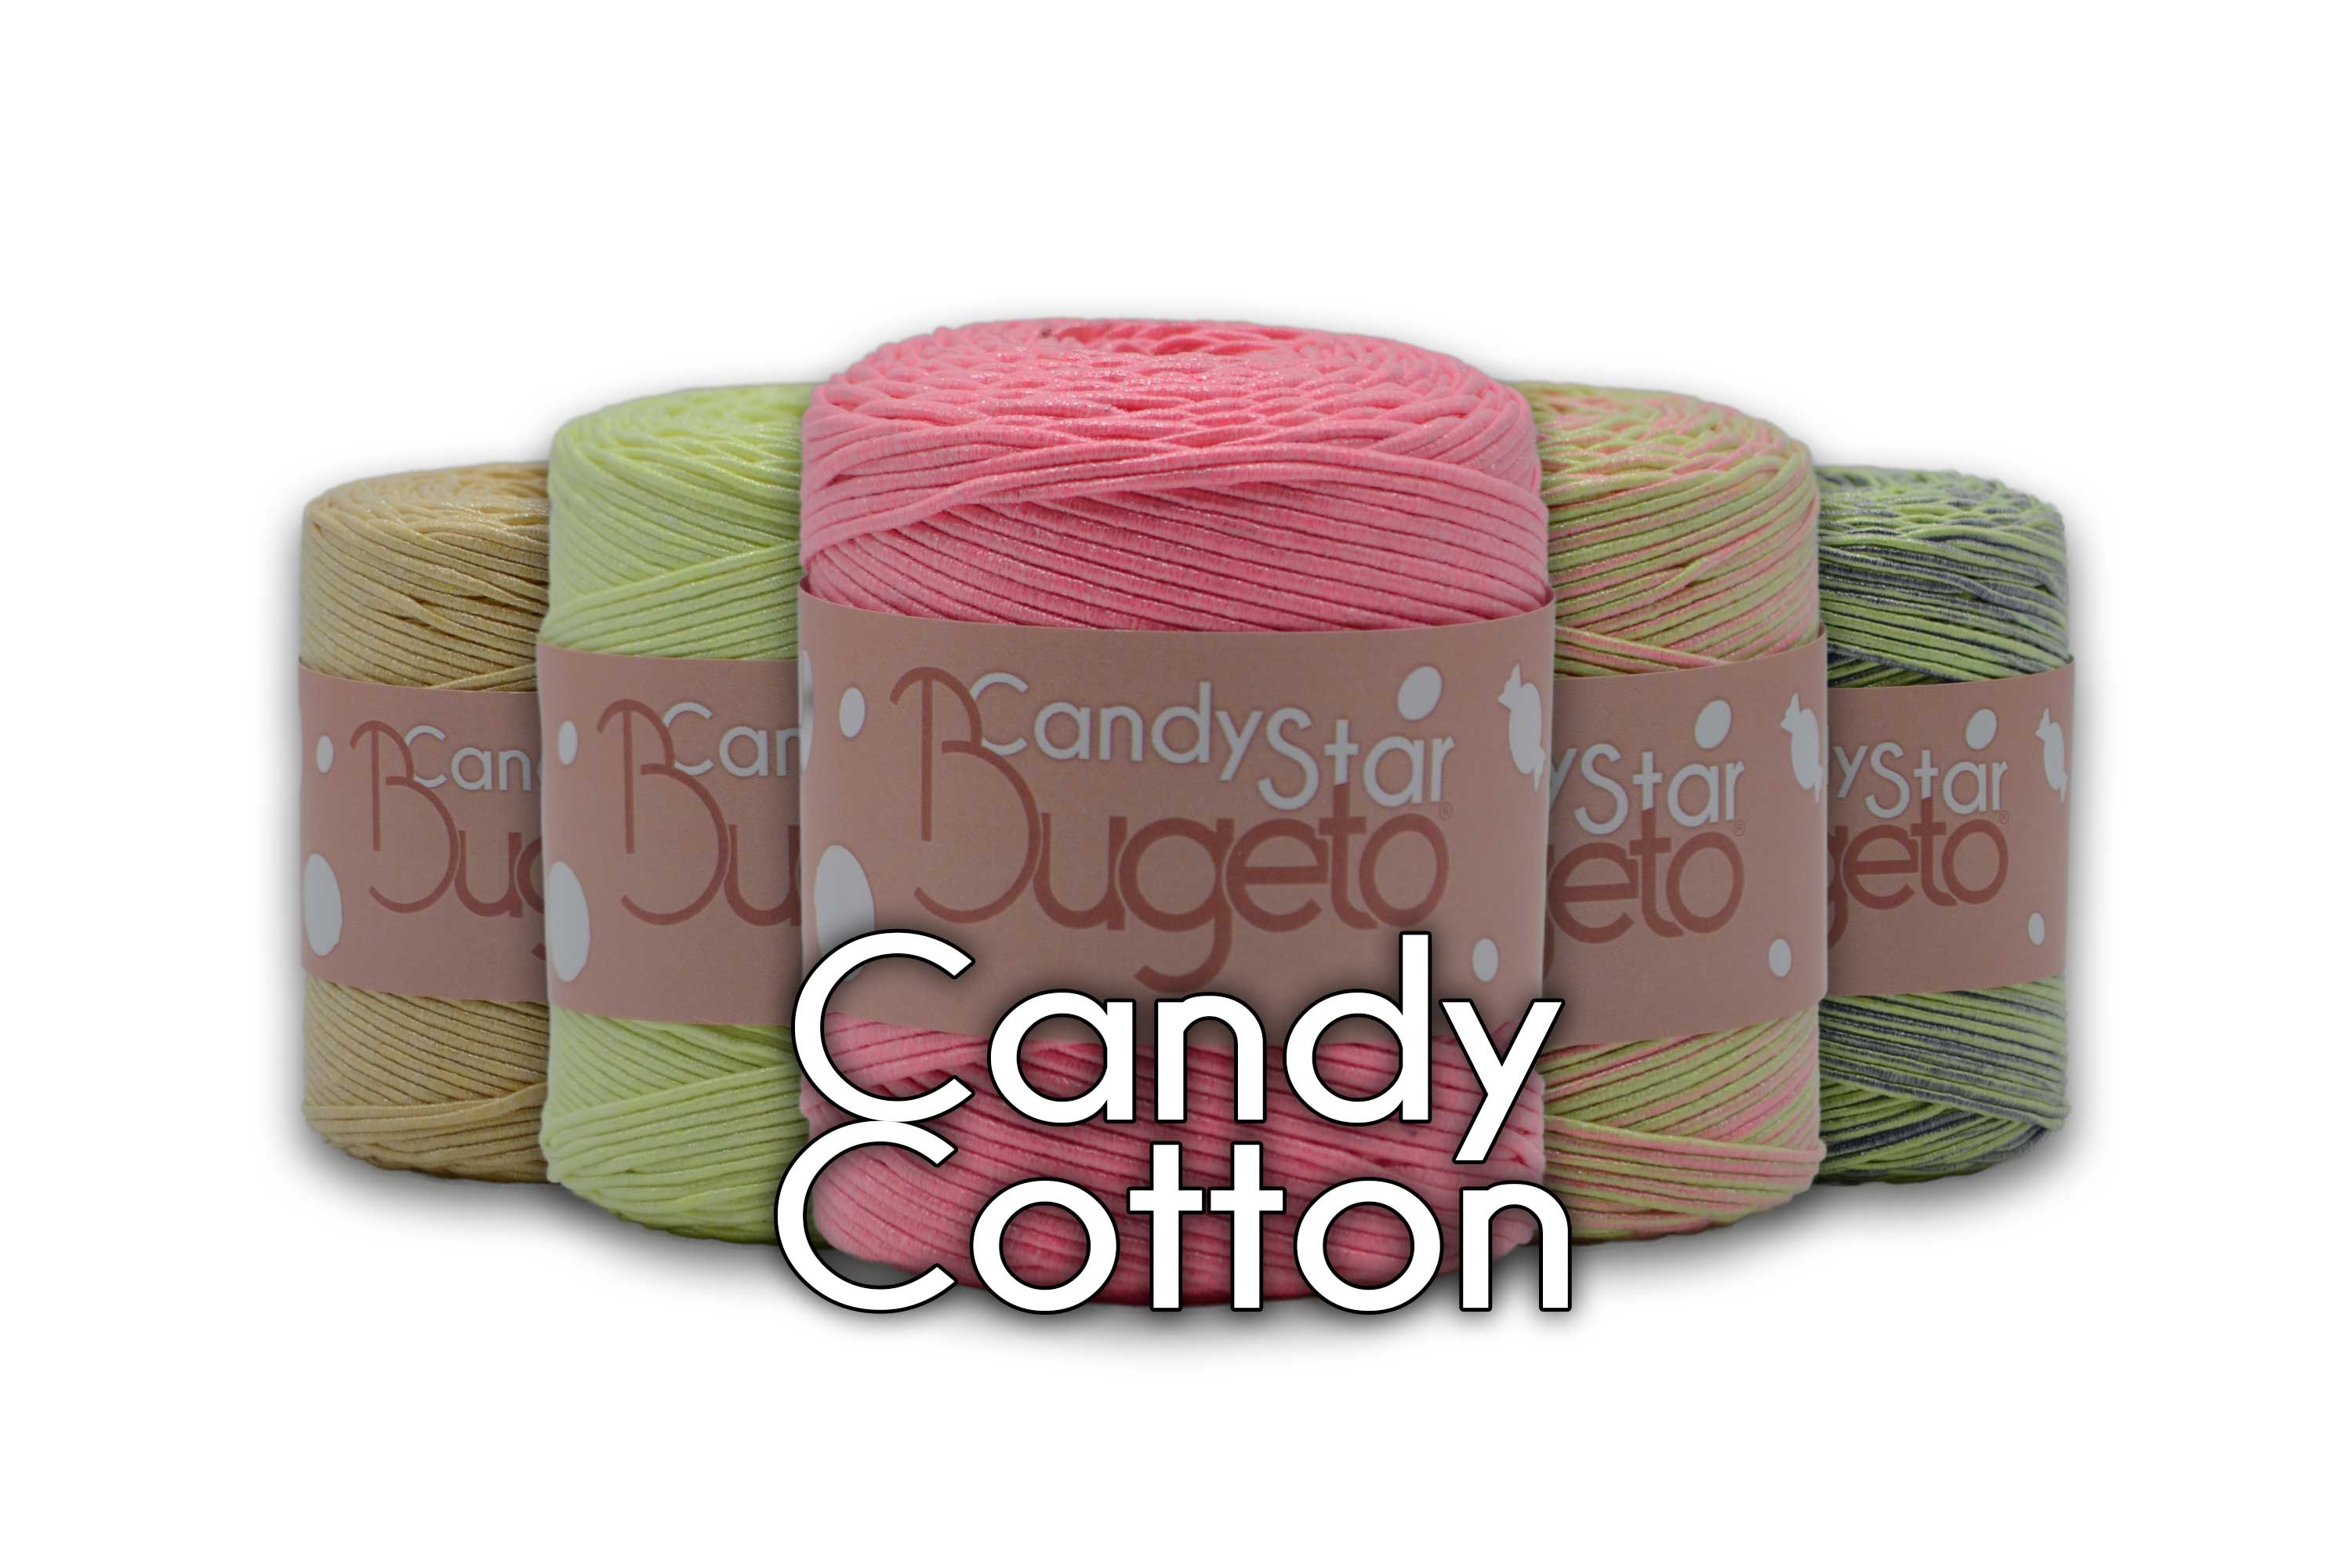 metallic yarns cotton with glitter yarn candy star yarns bugeto yarn